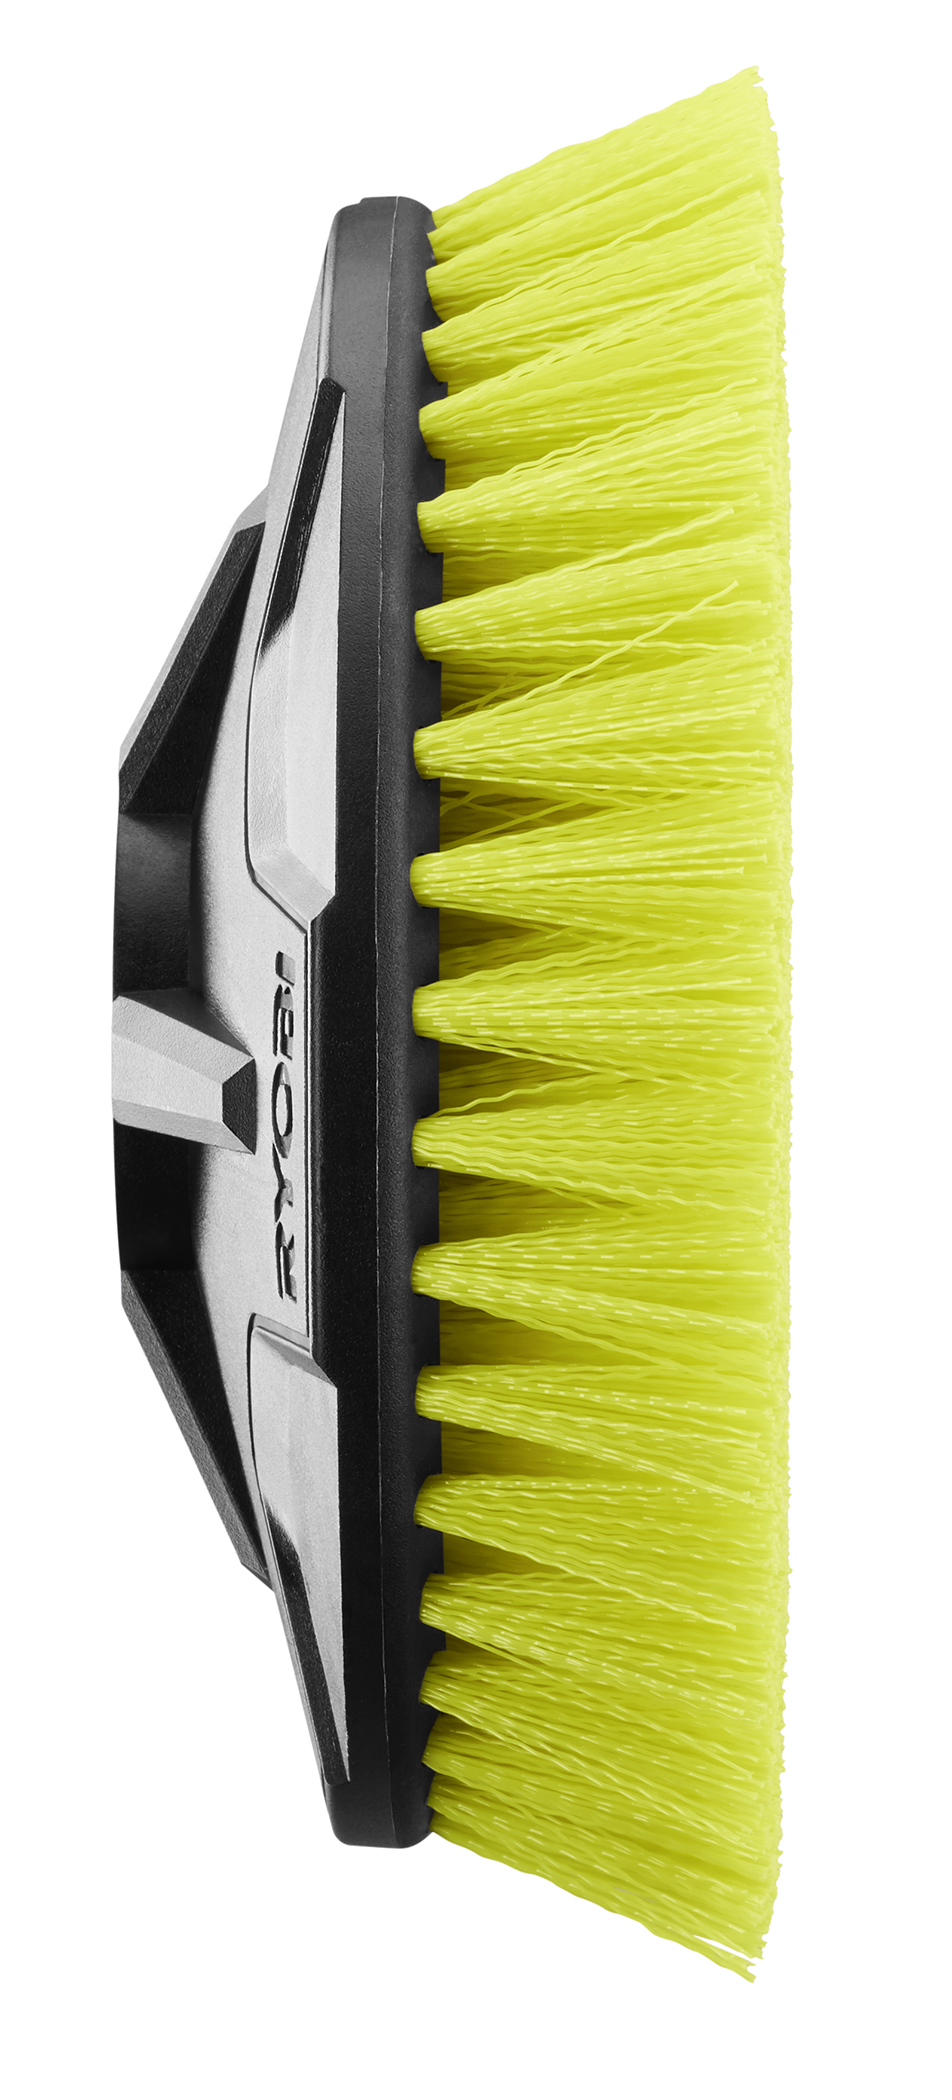 6 Medium Bristle Brush - RYOBI Tools